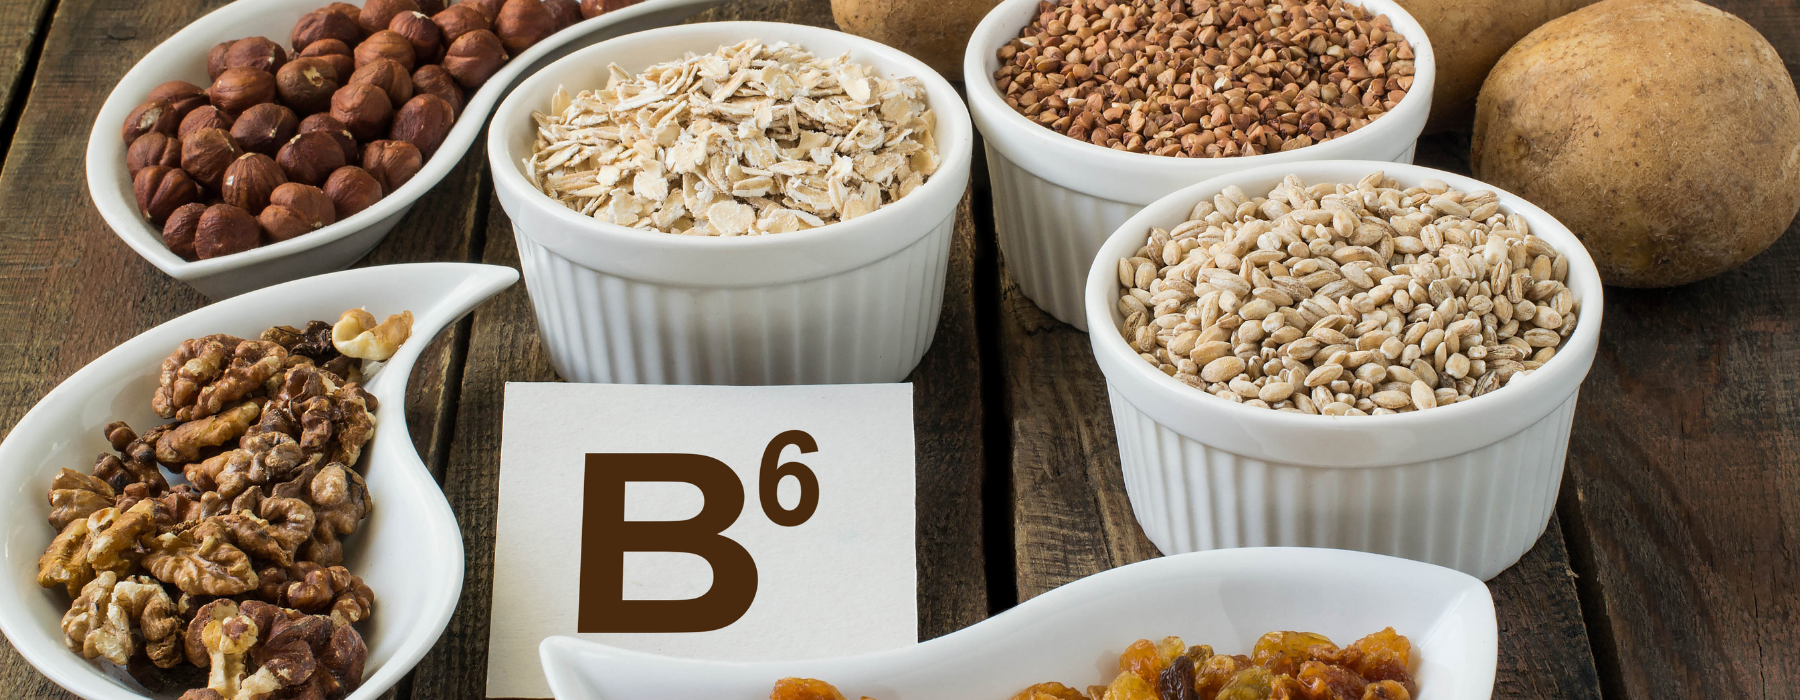 Vitamina B6 pode reduzir depressão e ansiedade